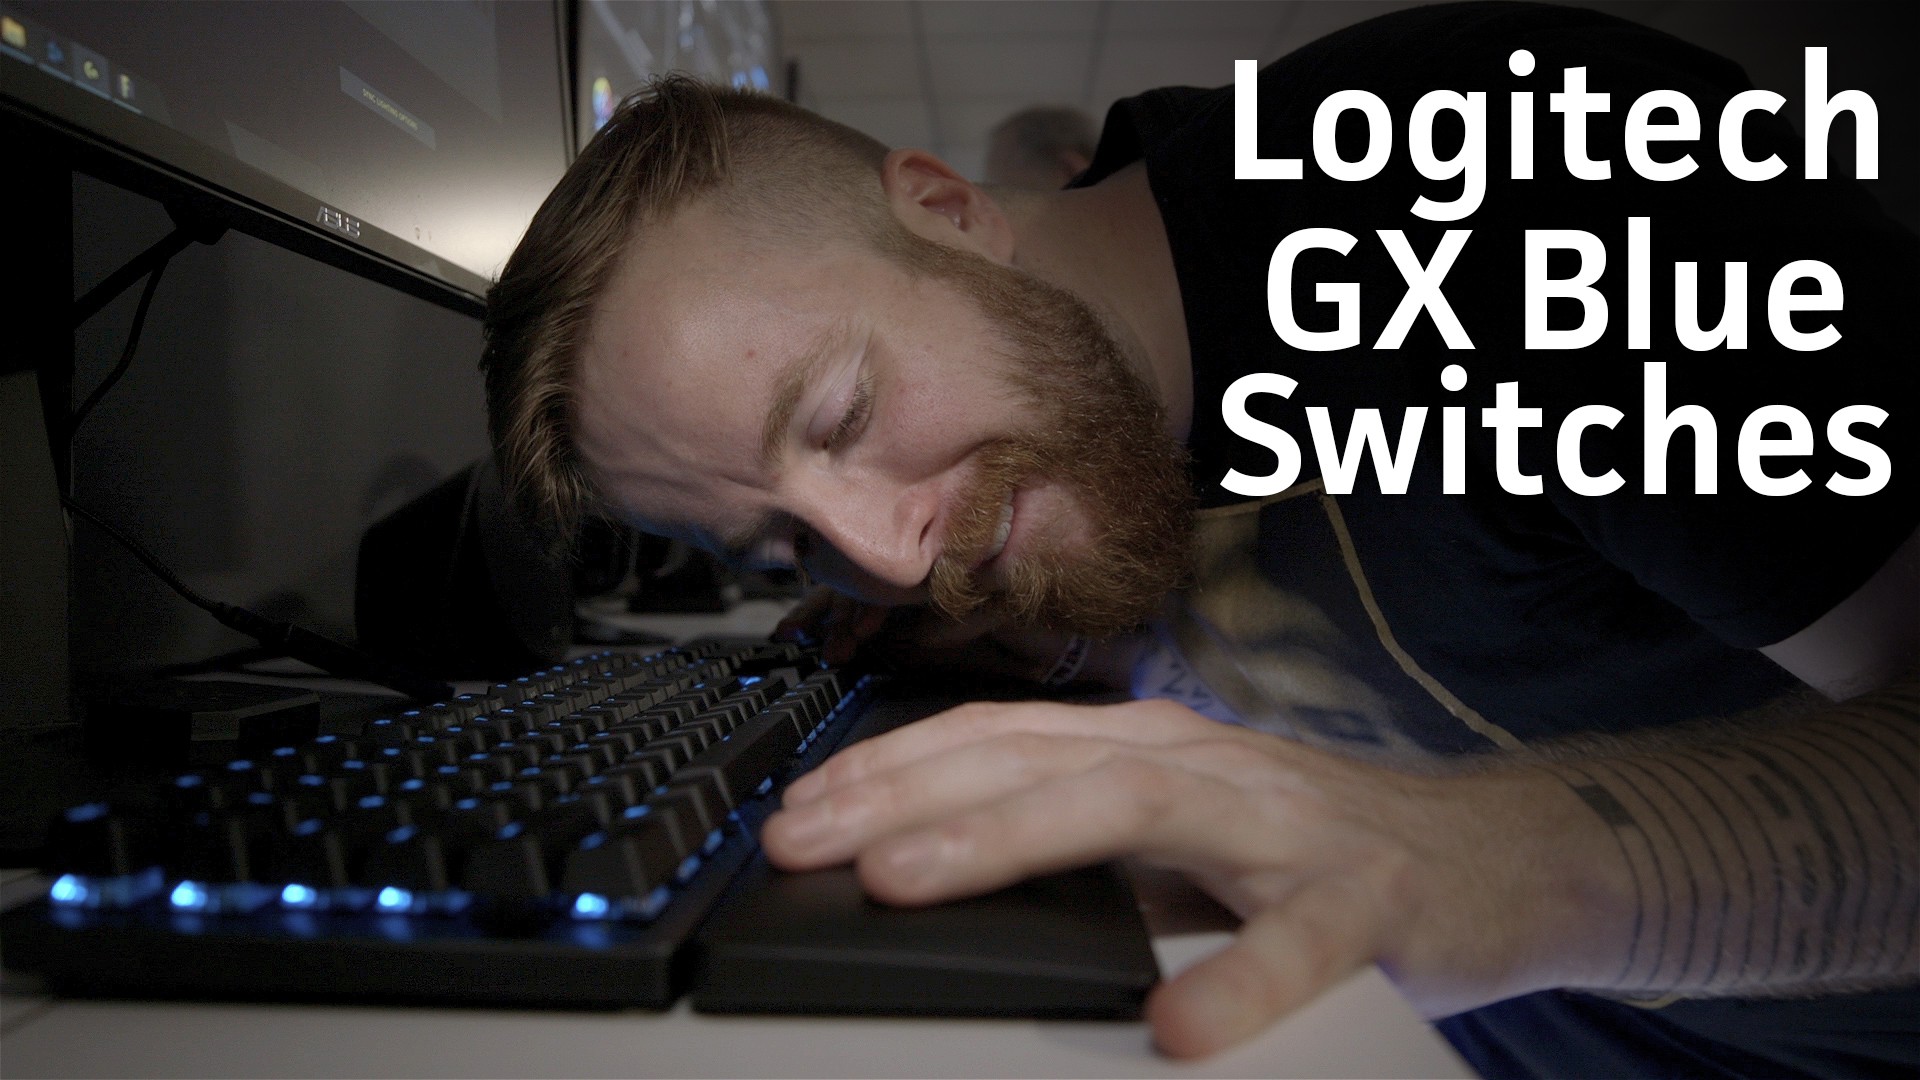 Logitech ra mắt loại switch GX Blue đặc biệt dành cho game thủ ưa 'ồn ào' 